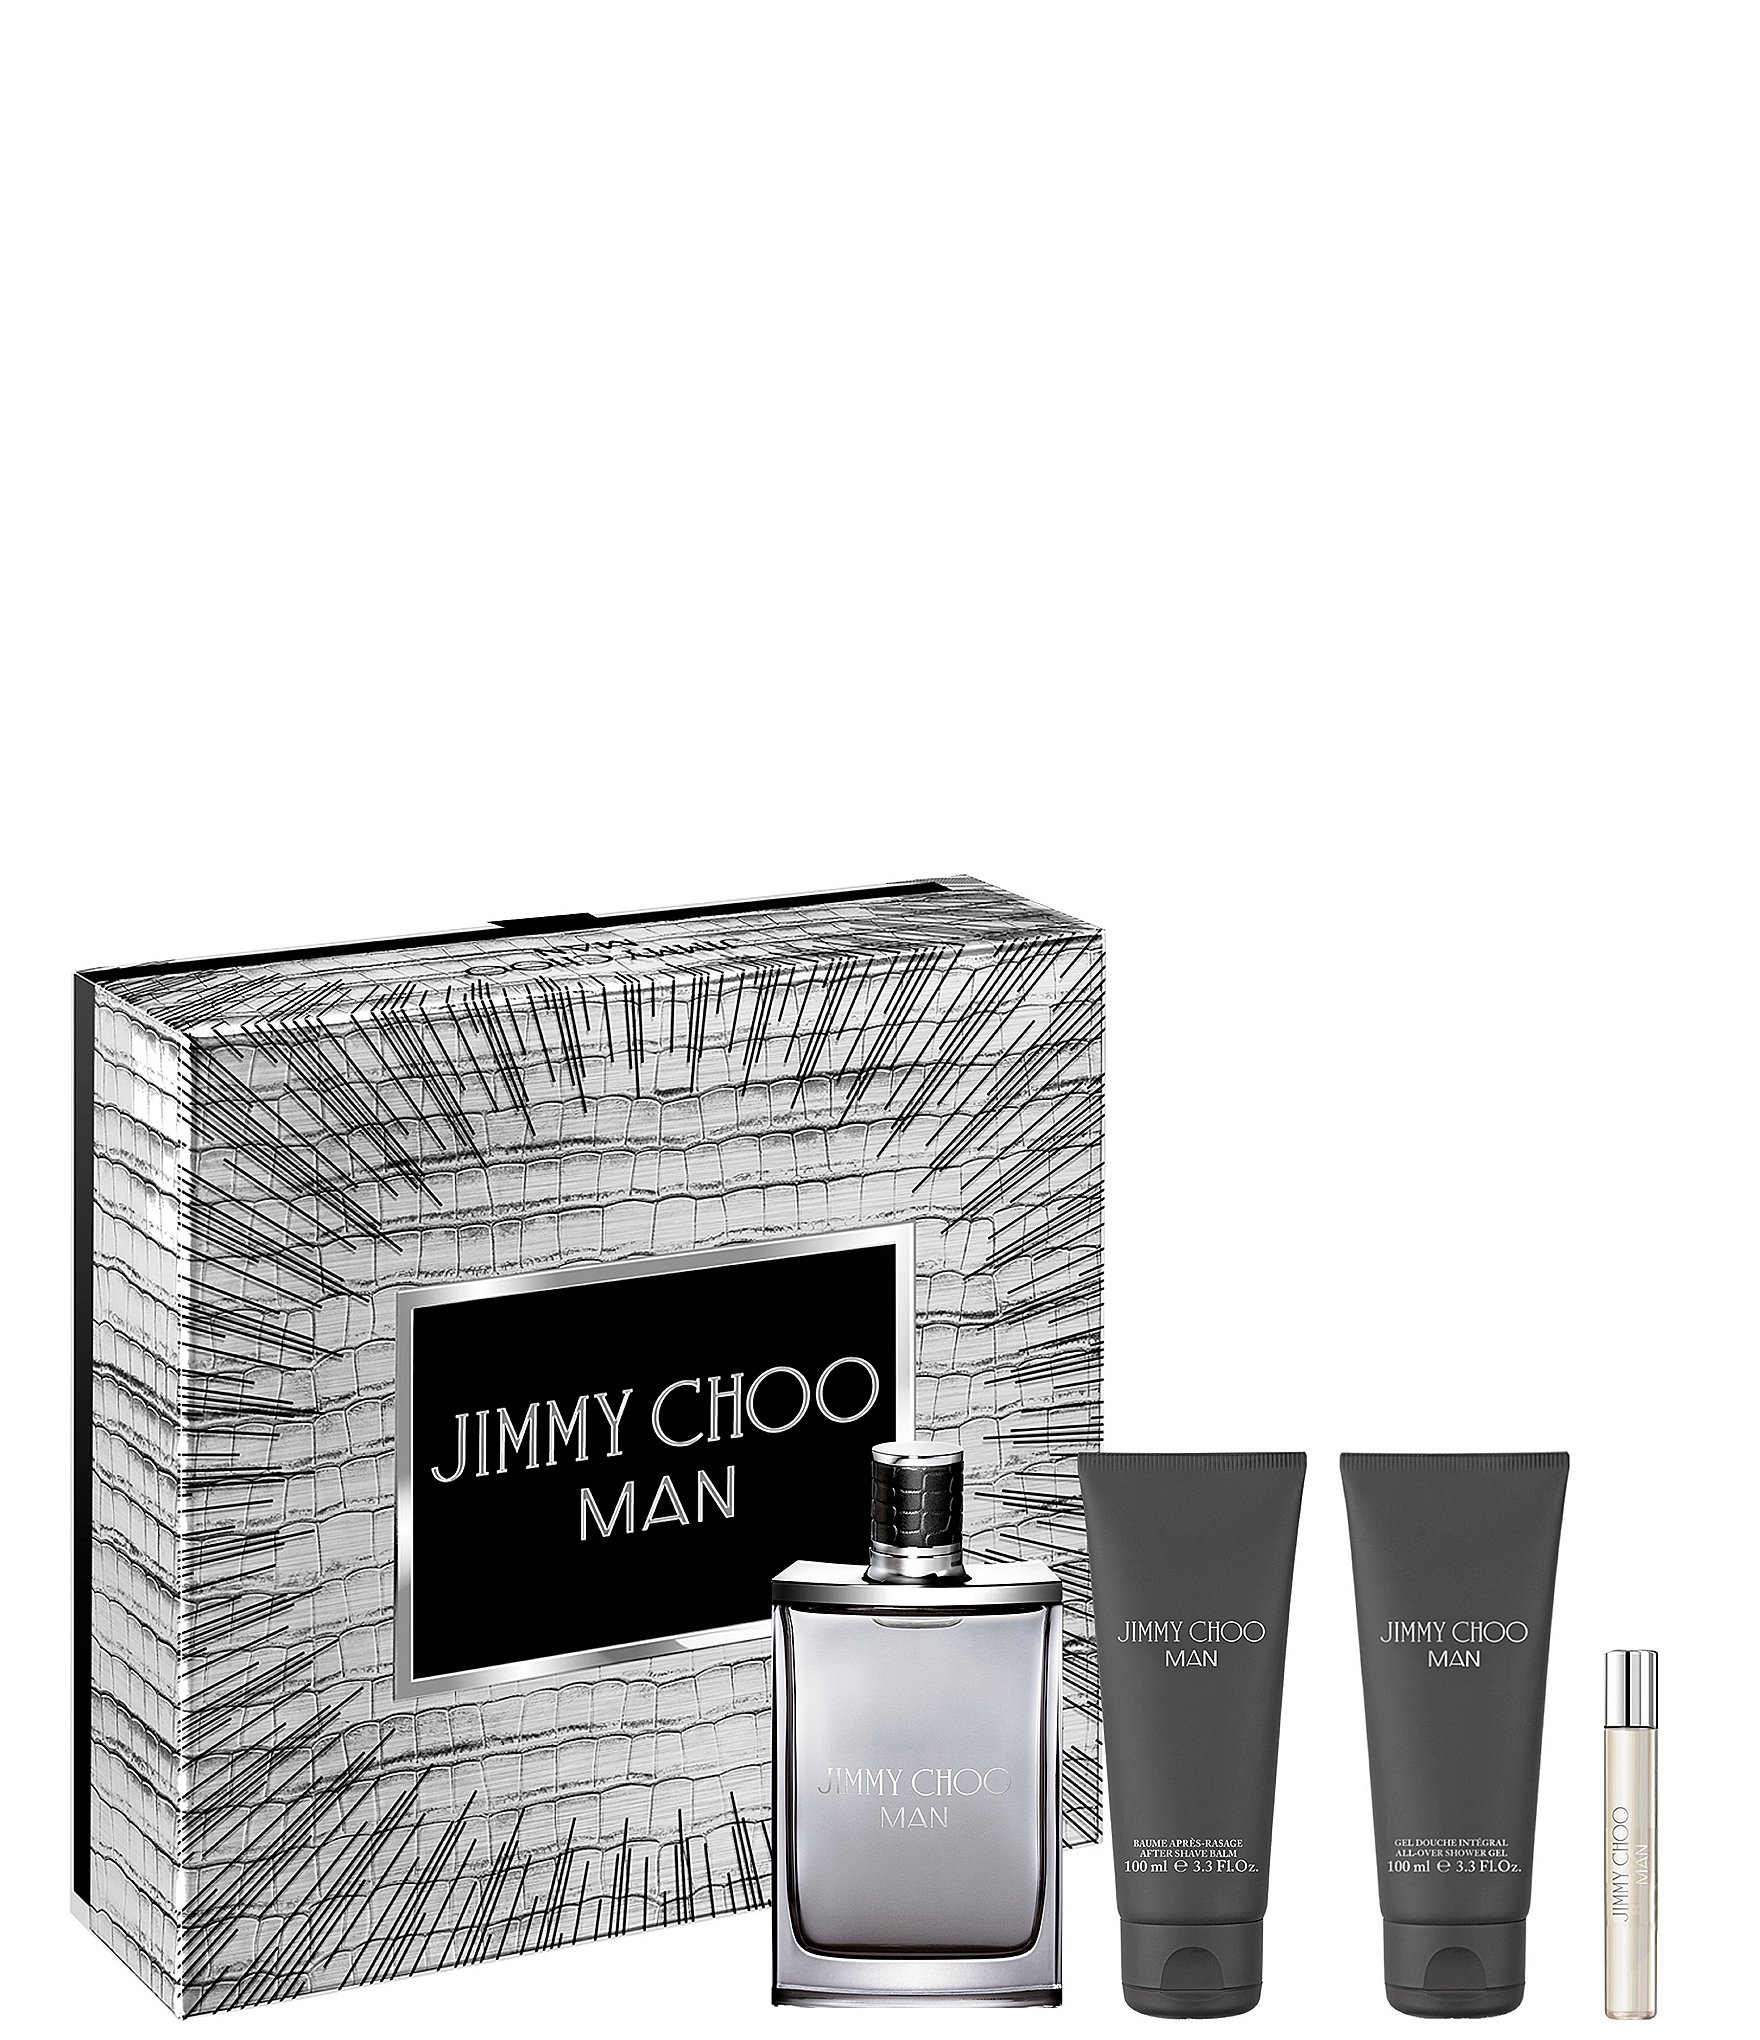 Aromatic Fragrance, Perfume, & Cologne for Women & Men